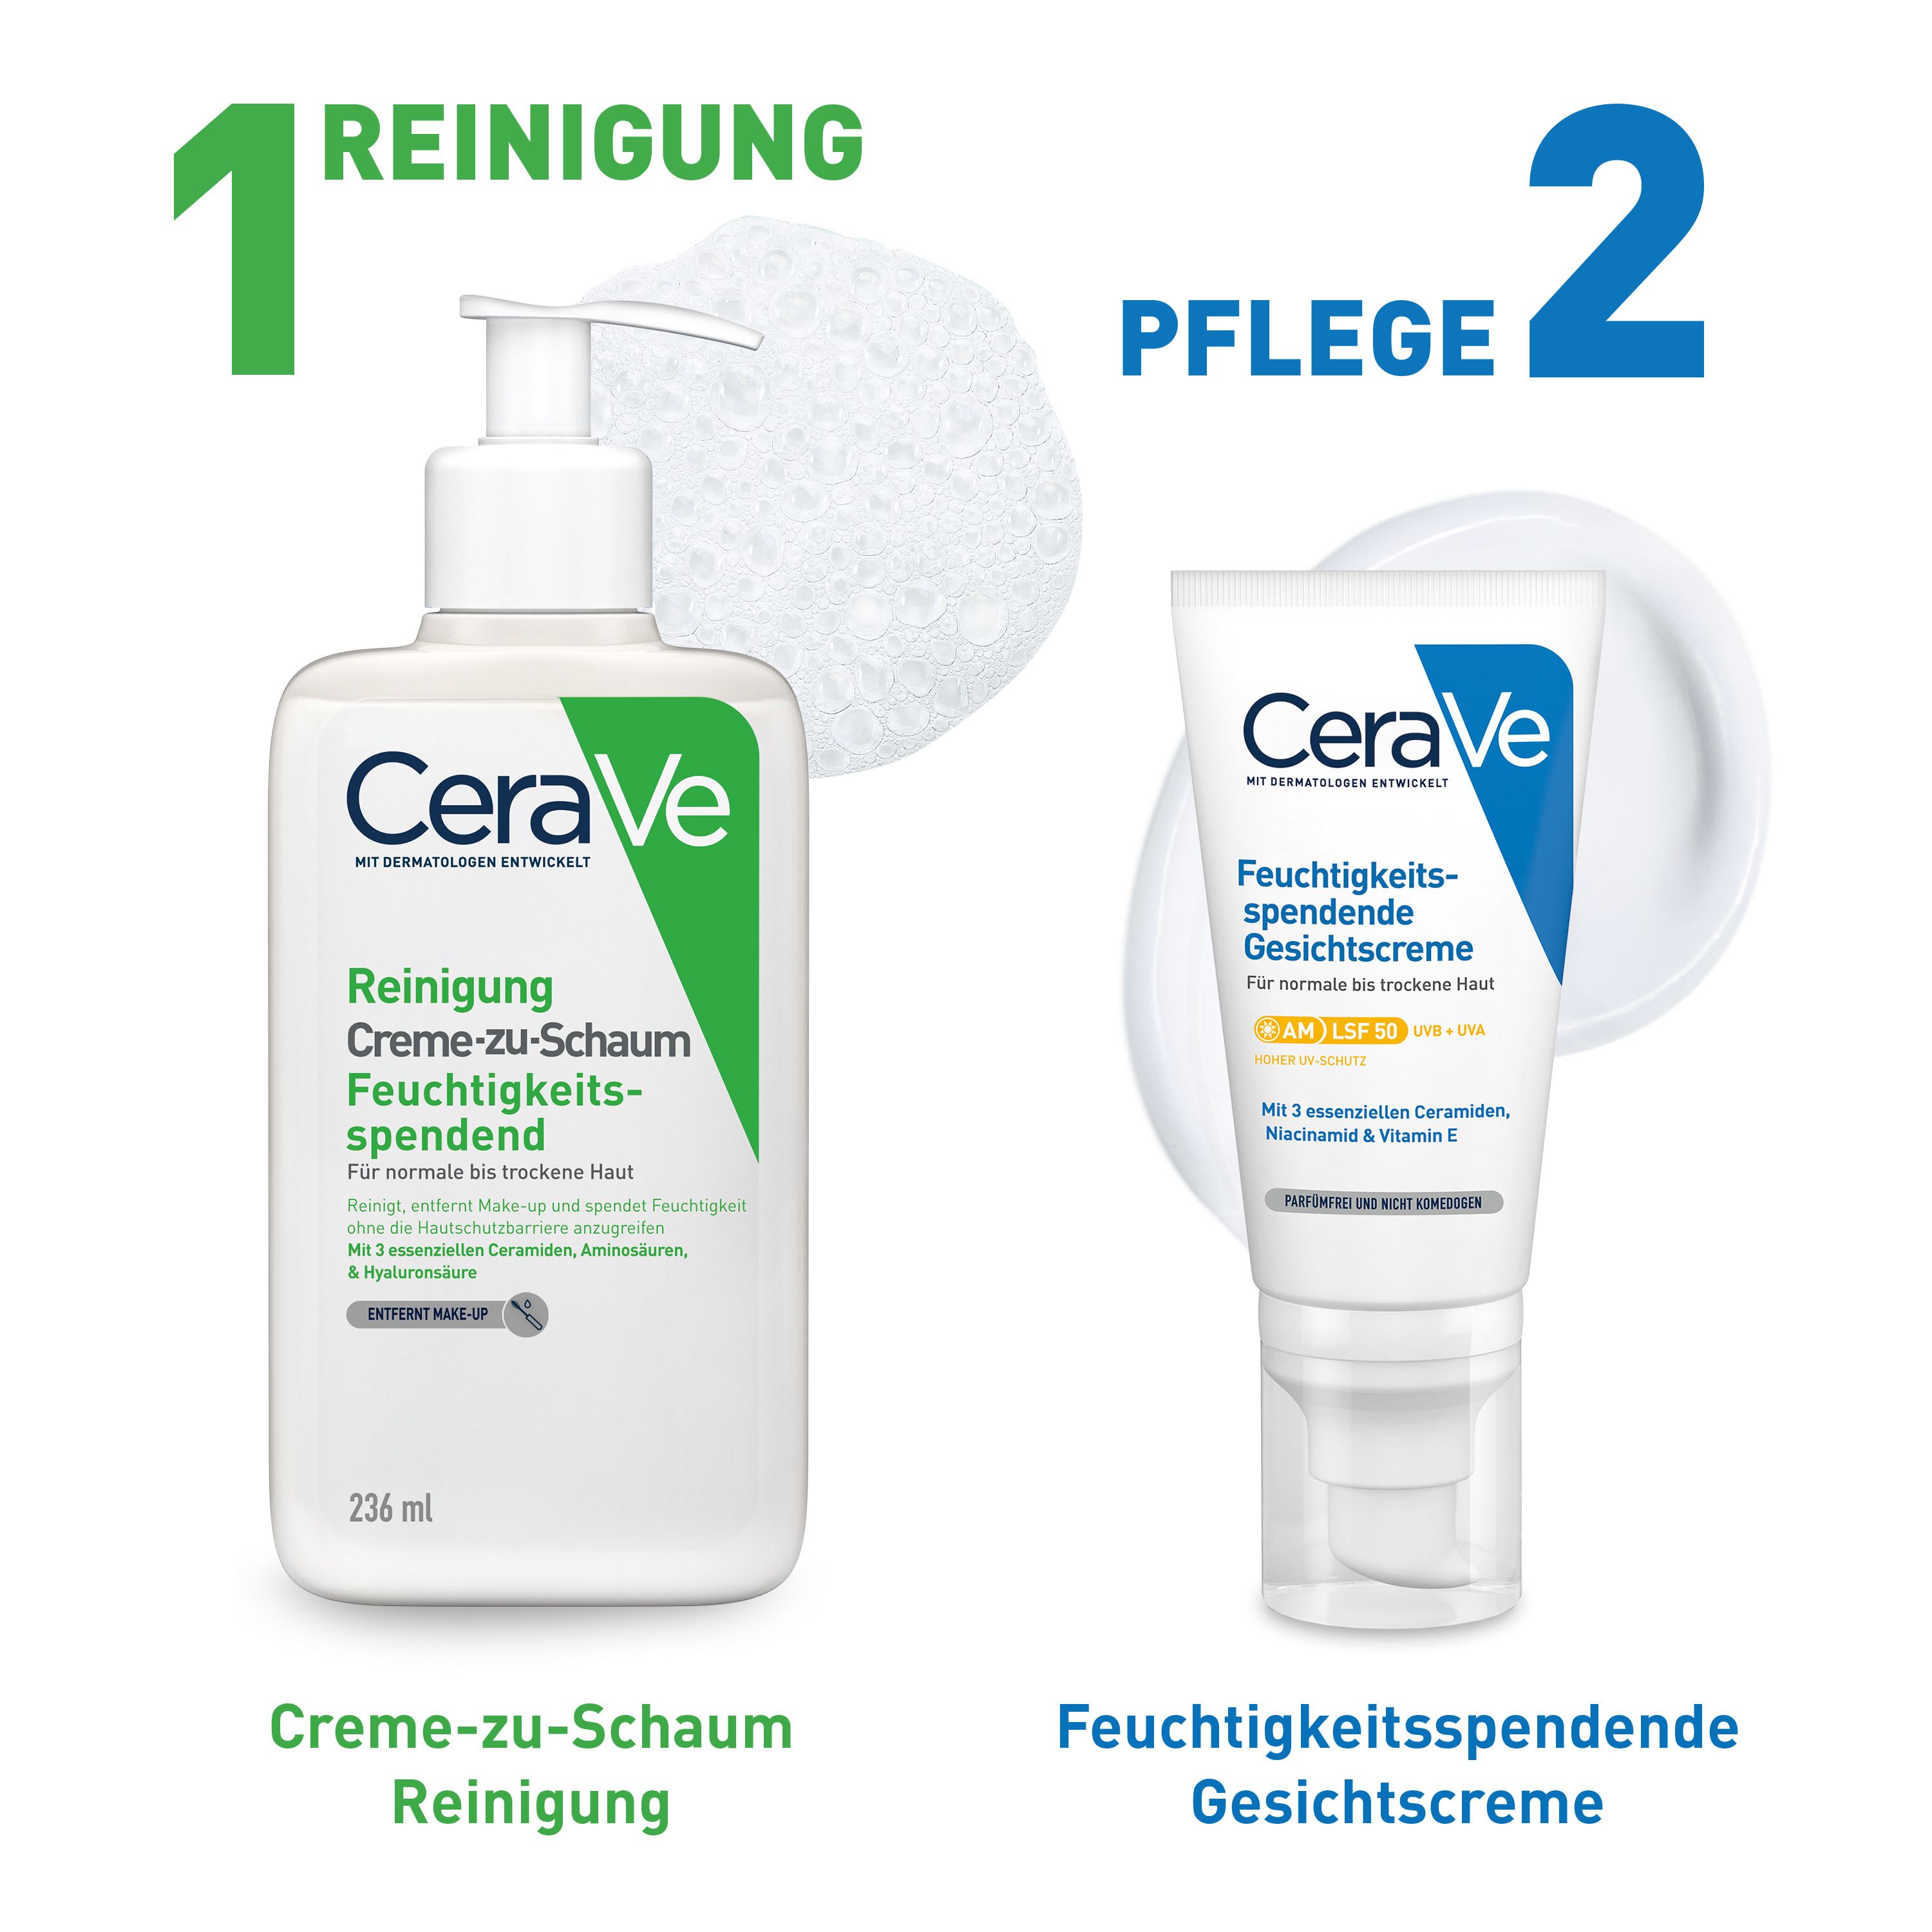 CeraVe Feuchtigkeitsspendende Gesichtscreme mit LSF 50 – für normale bis trockene Haut